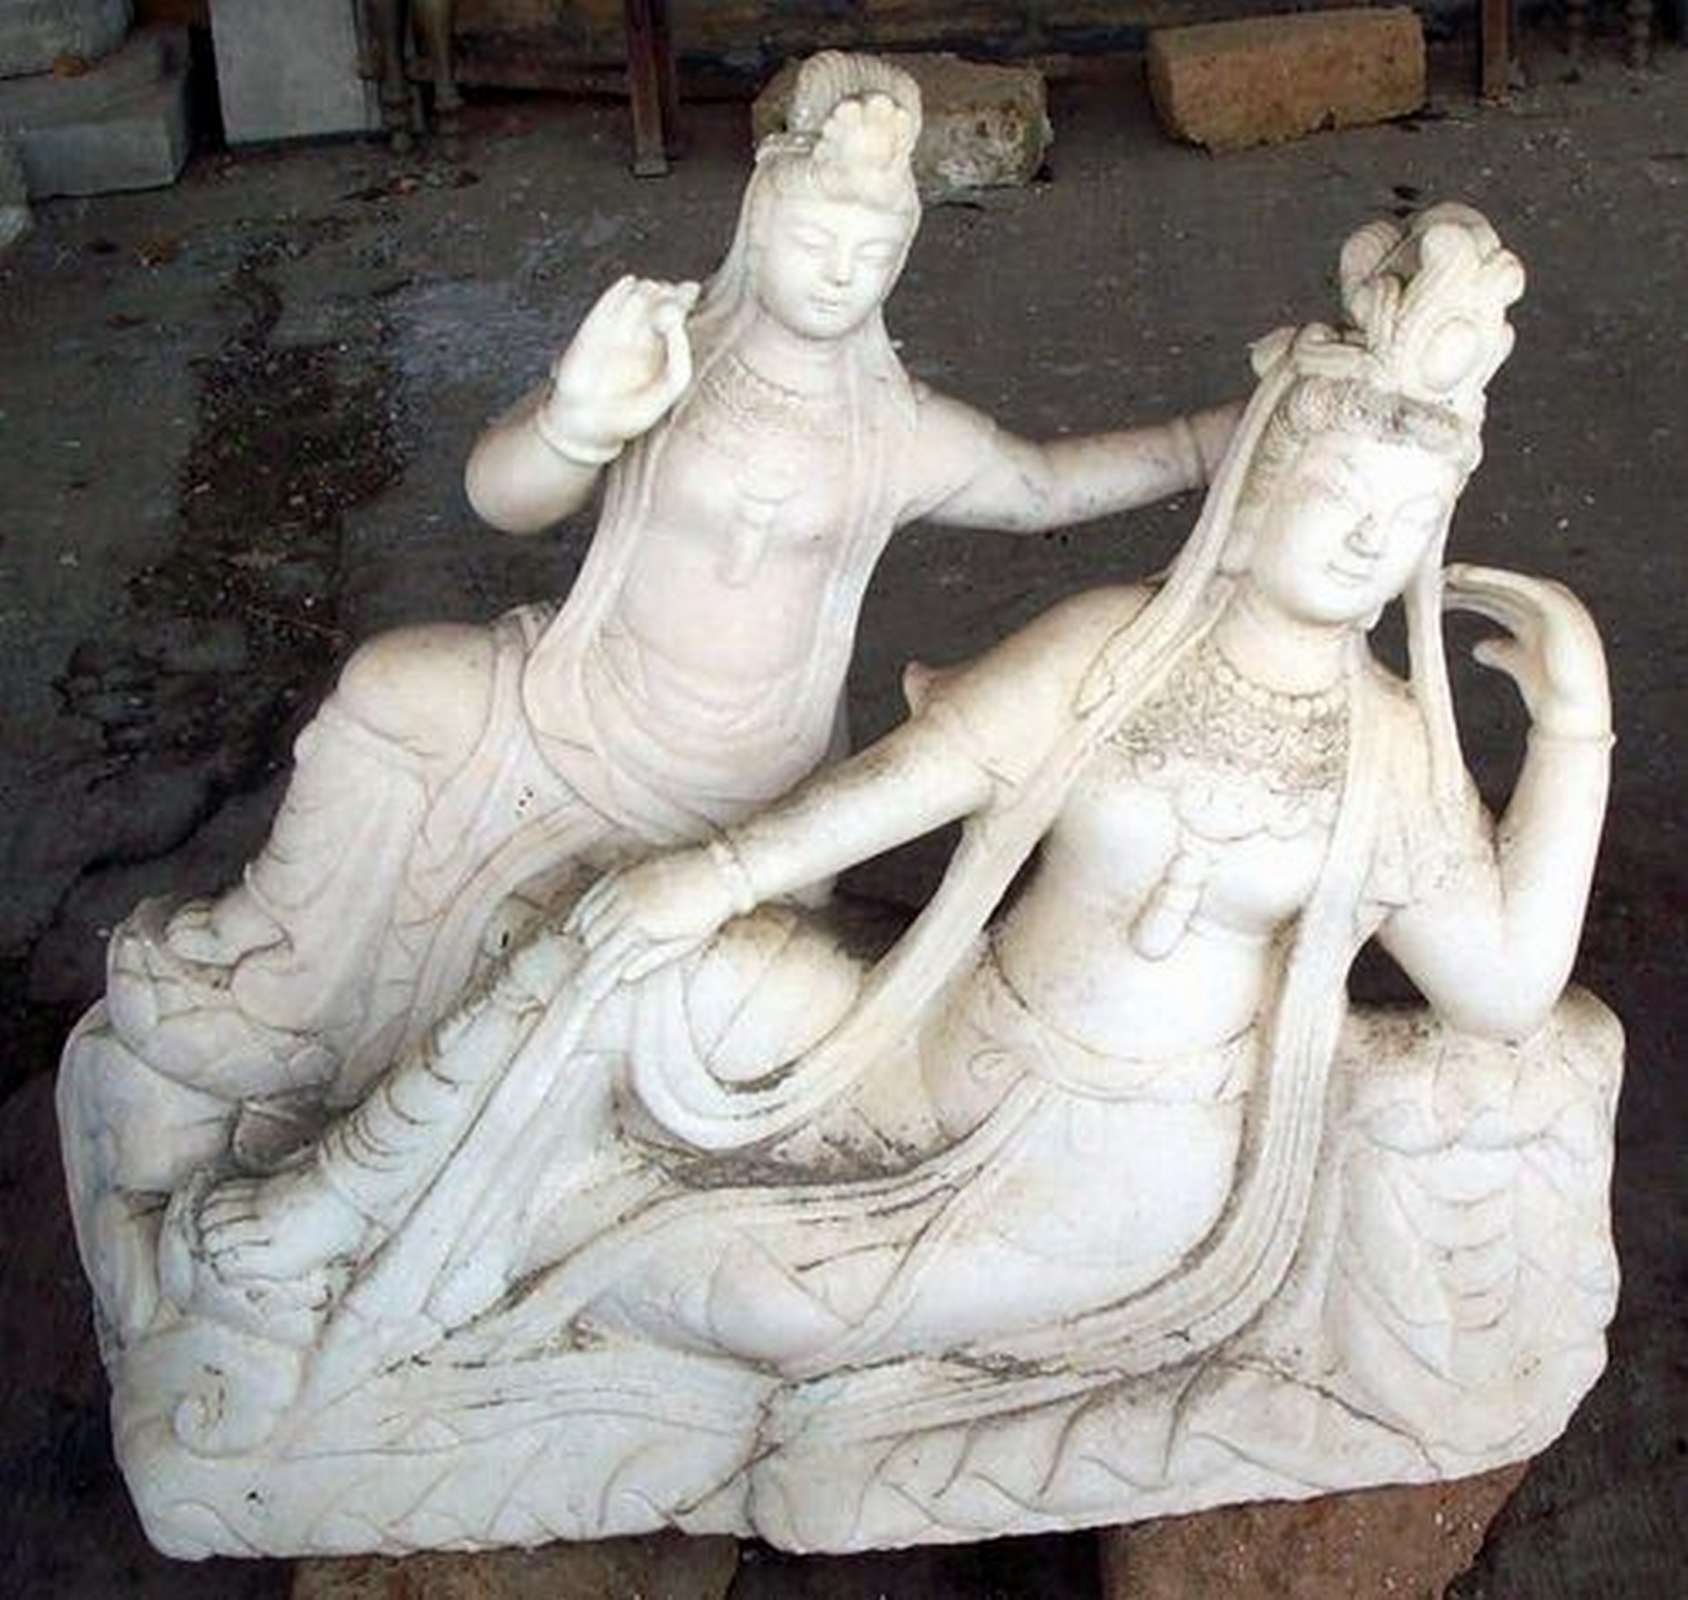 Antiche sculture in marmo. Epoca 1800. - Statue Antiche - Sculture Antiche - Prodotti - Antichità Fiorillo